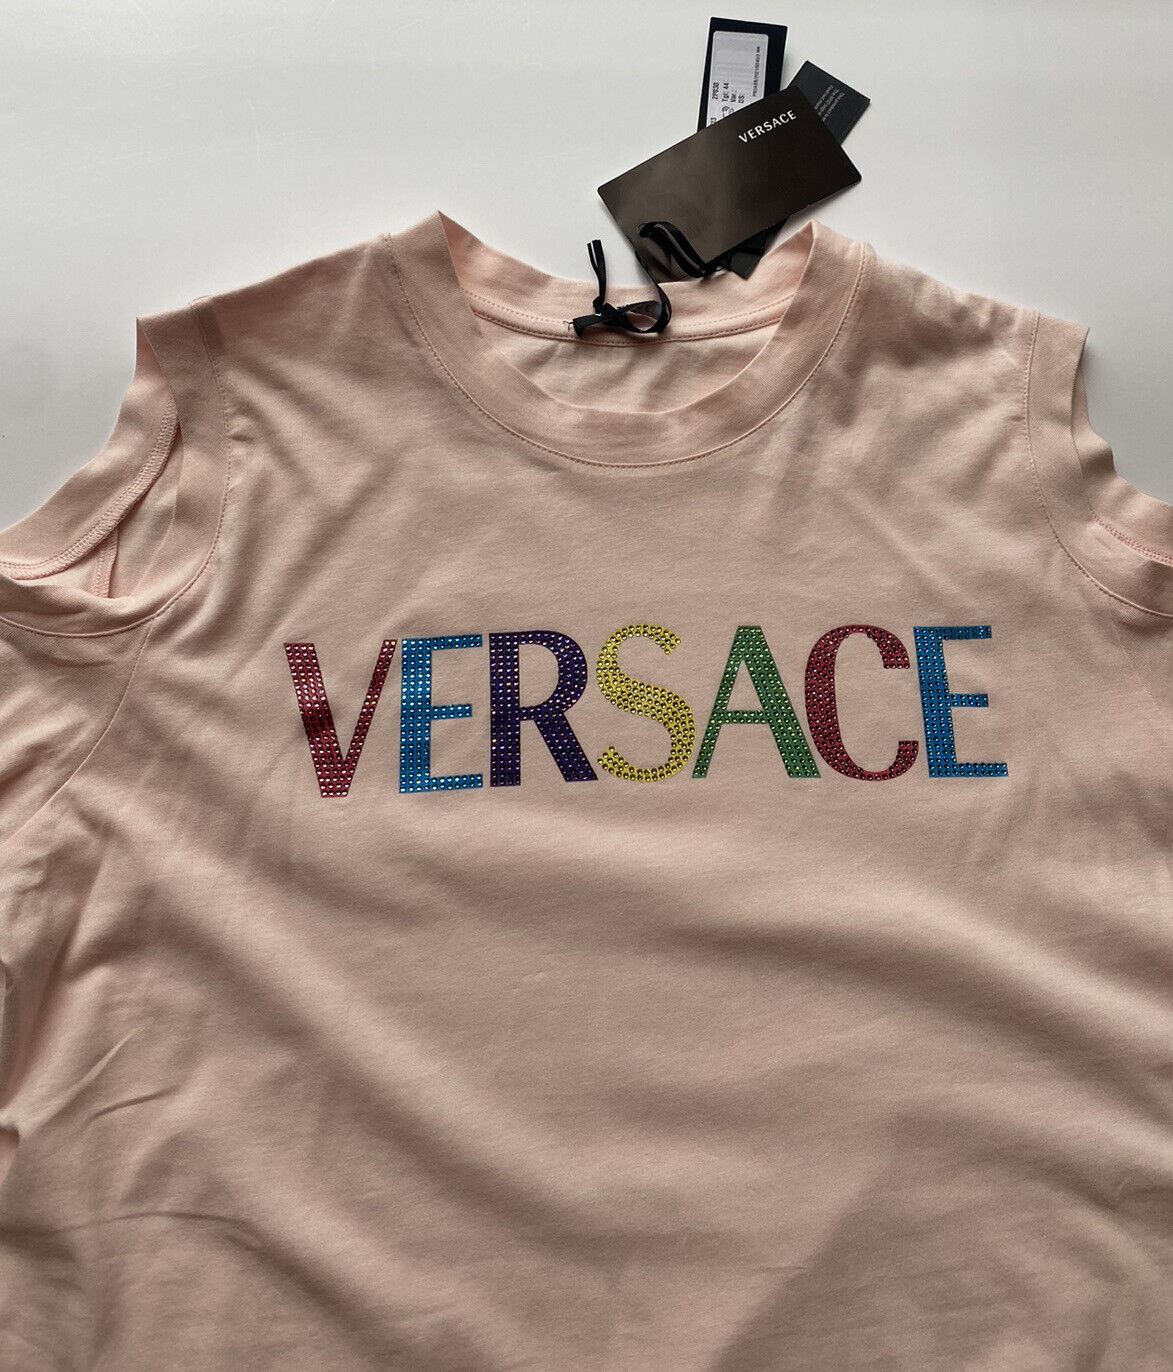 Женская трикотажная футболка с вышивкой логотипа NWT Versace Rose 10 США (44 евро) 1004970